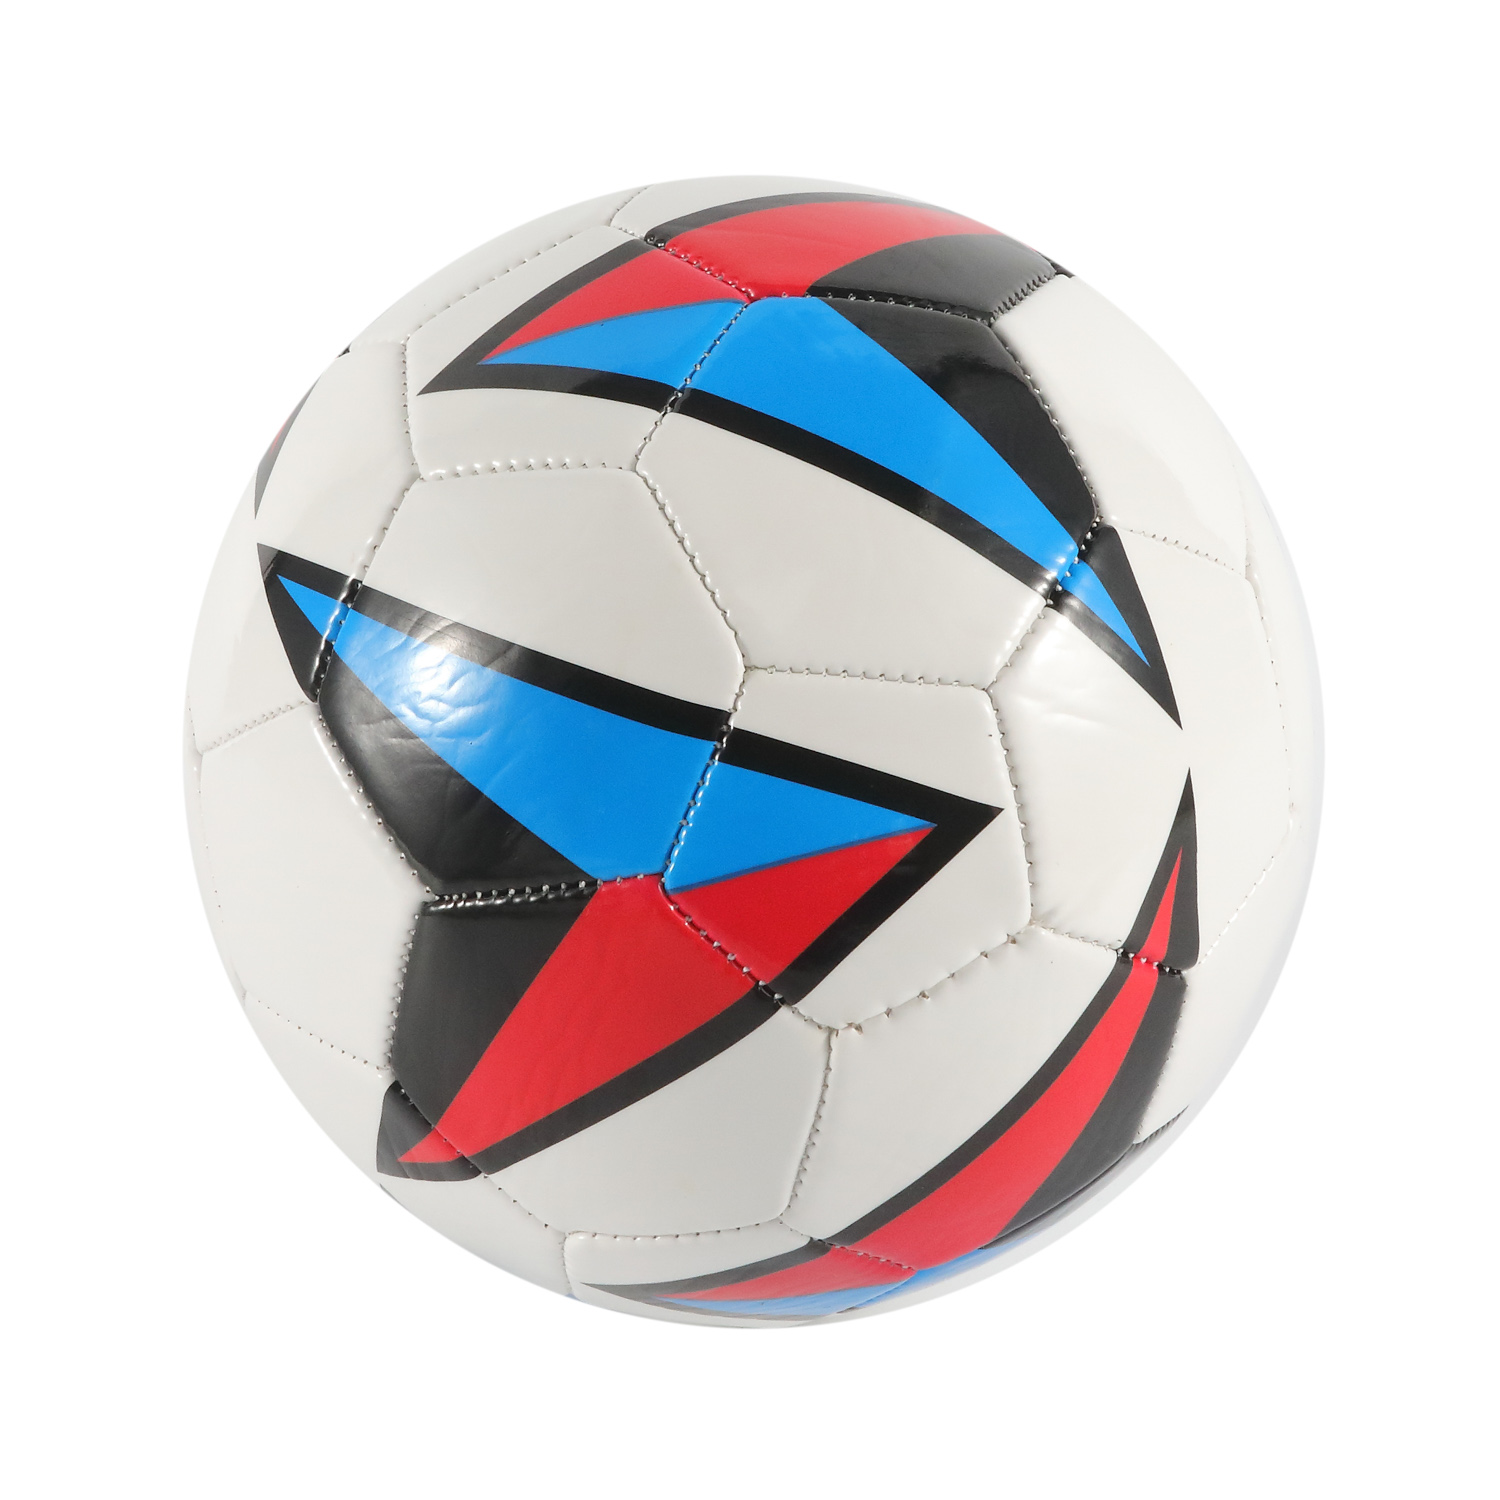 Professioneller maschinengenähter Fußball mit PVC-Abdeckung mit individuellem Logo